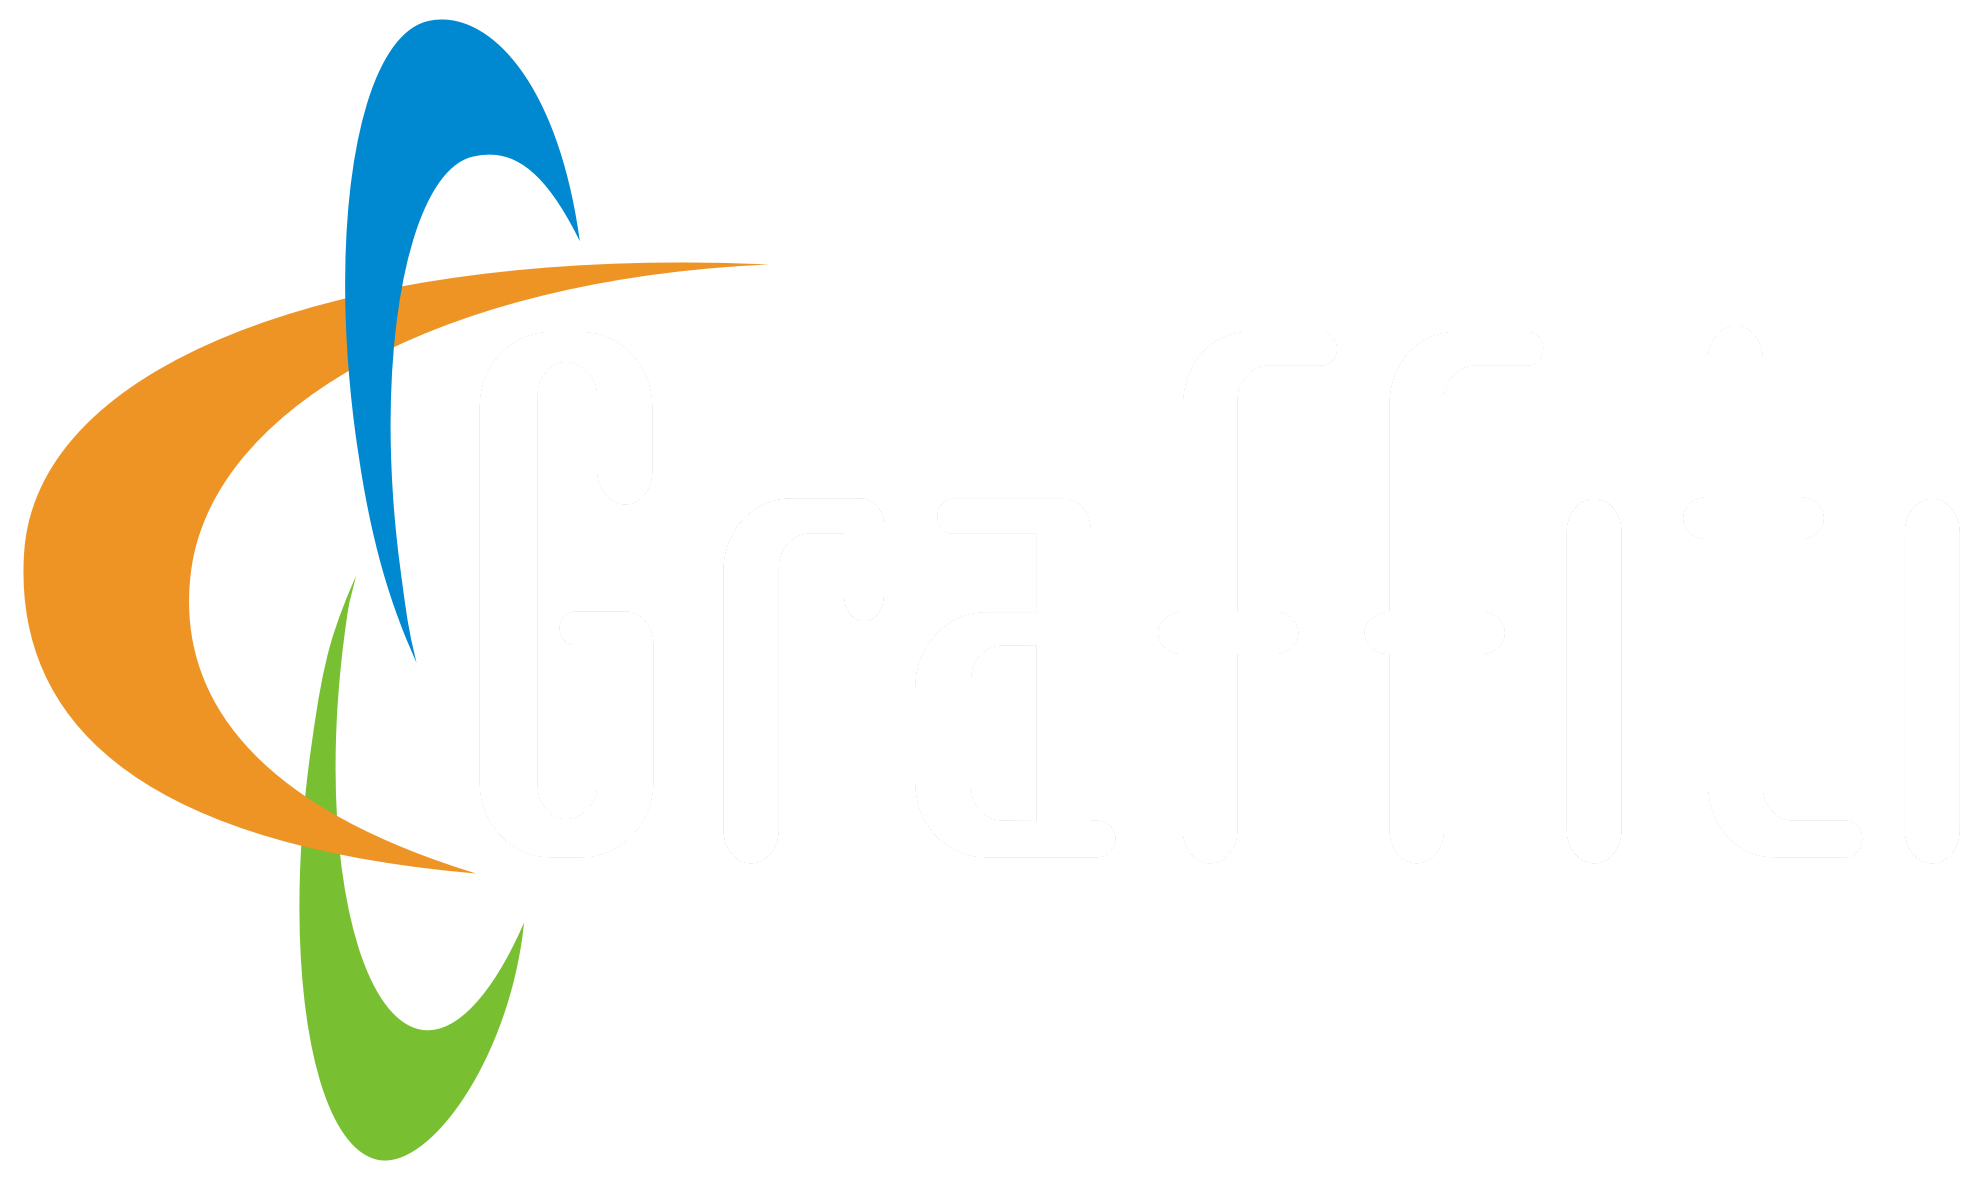 GRAFFITI